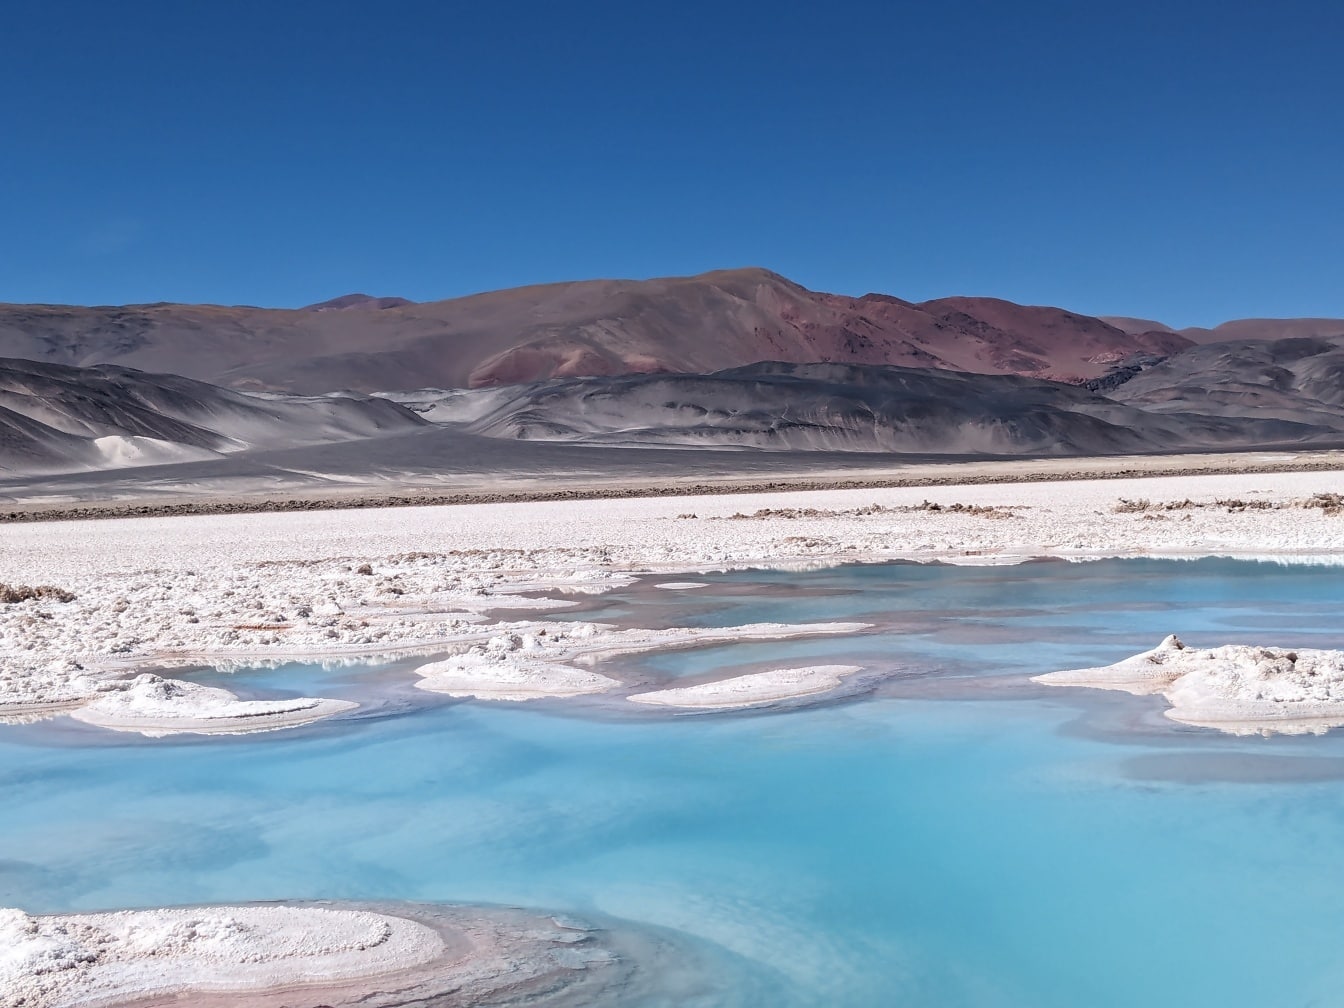 안데스 산맥의 카타마르카 사막에 있는 Salar de Antofalla의 소금 고원에 있는 소금 오아시스 땅에 소금이 쌓여 있습니다.